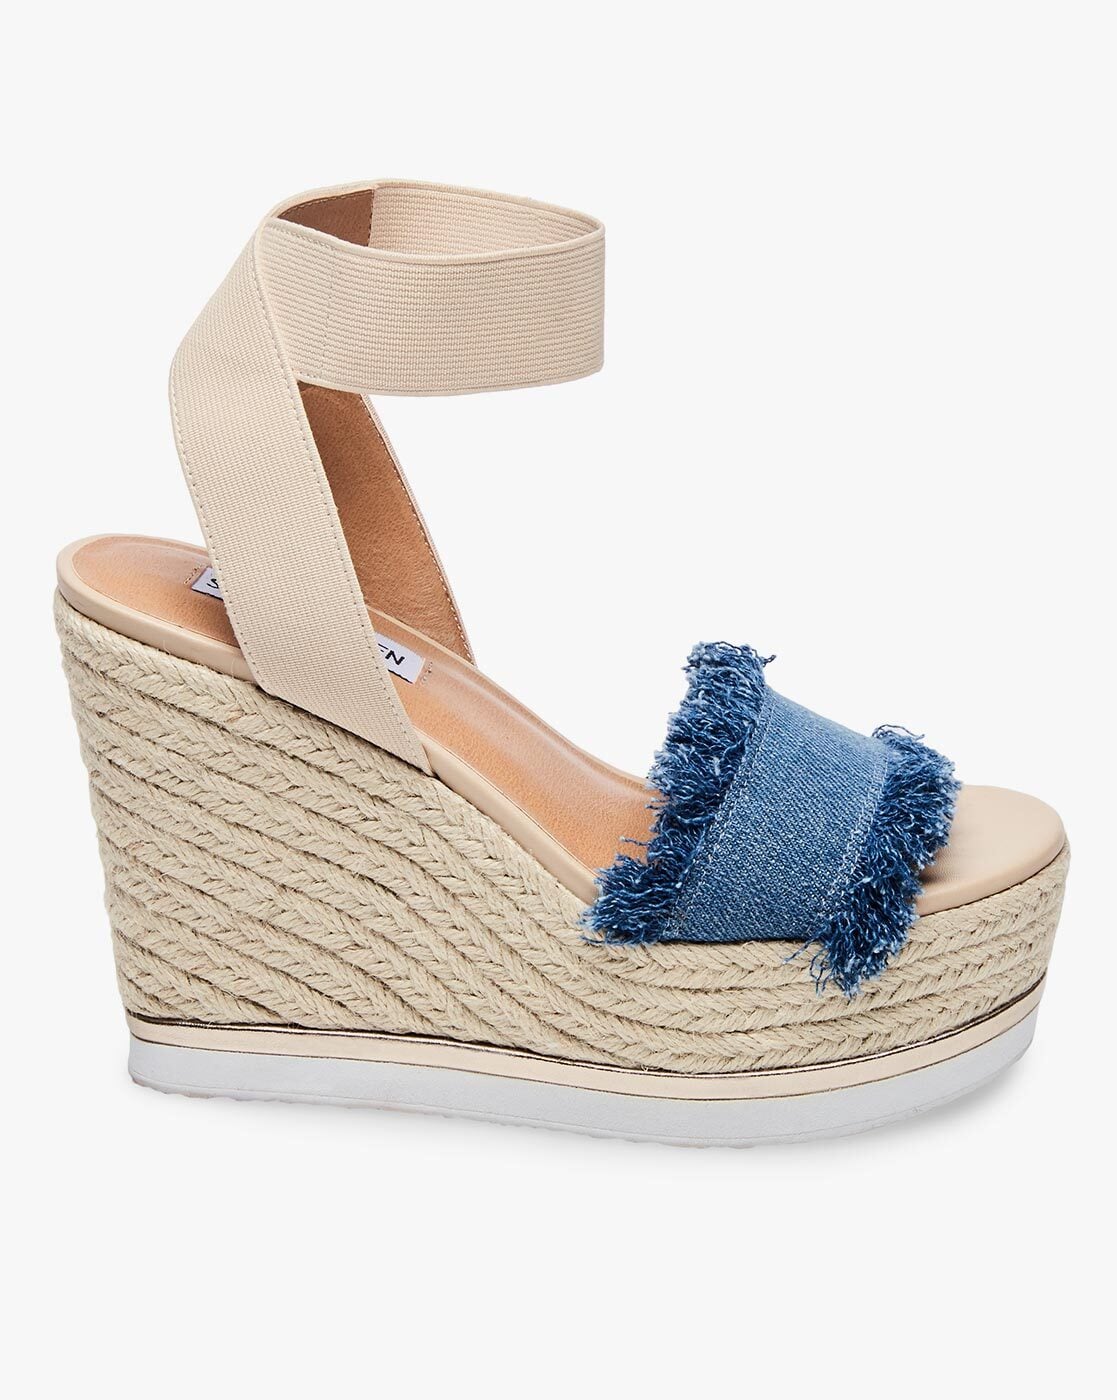 Buy Beige \u0026 Blue Heeled Sandals for 